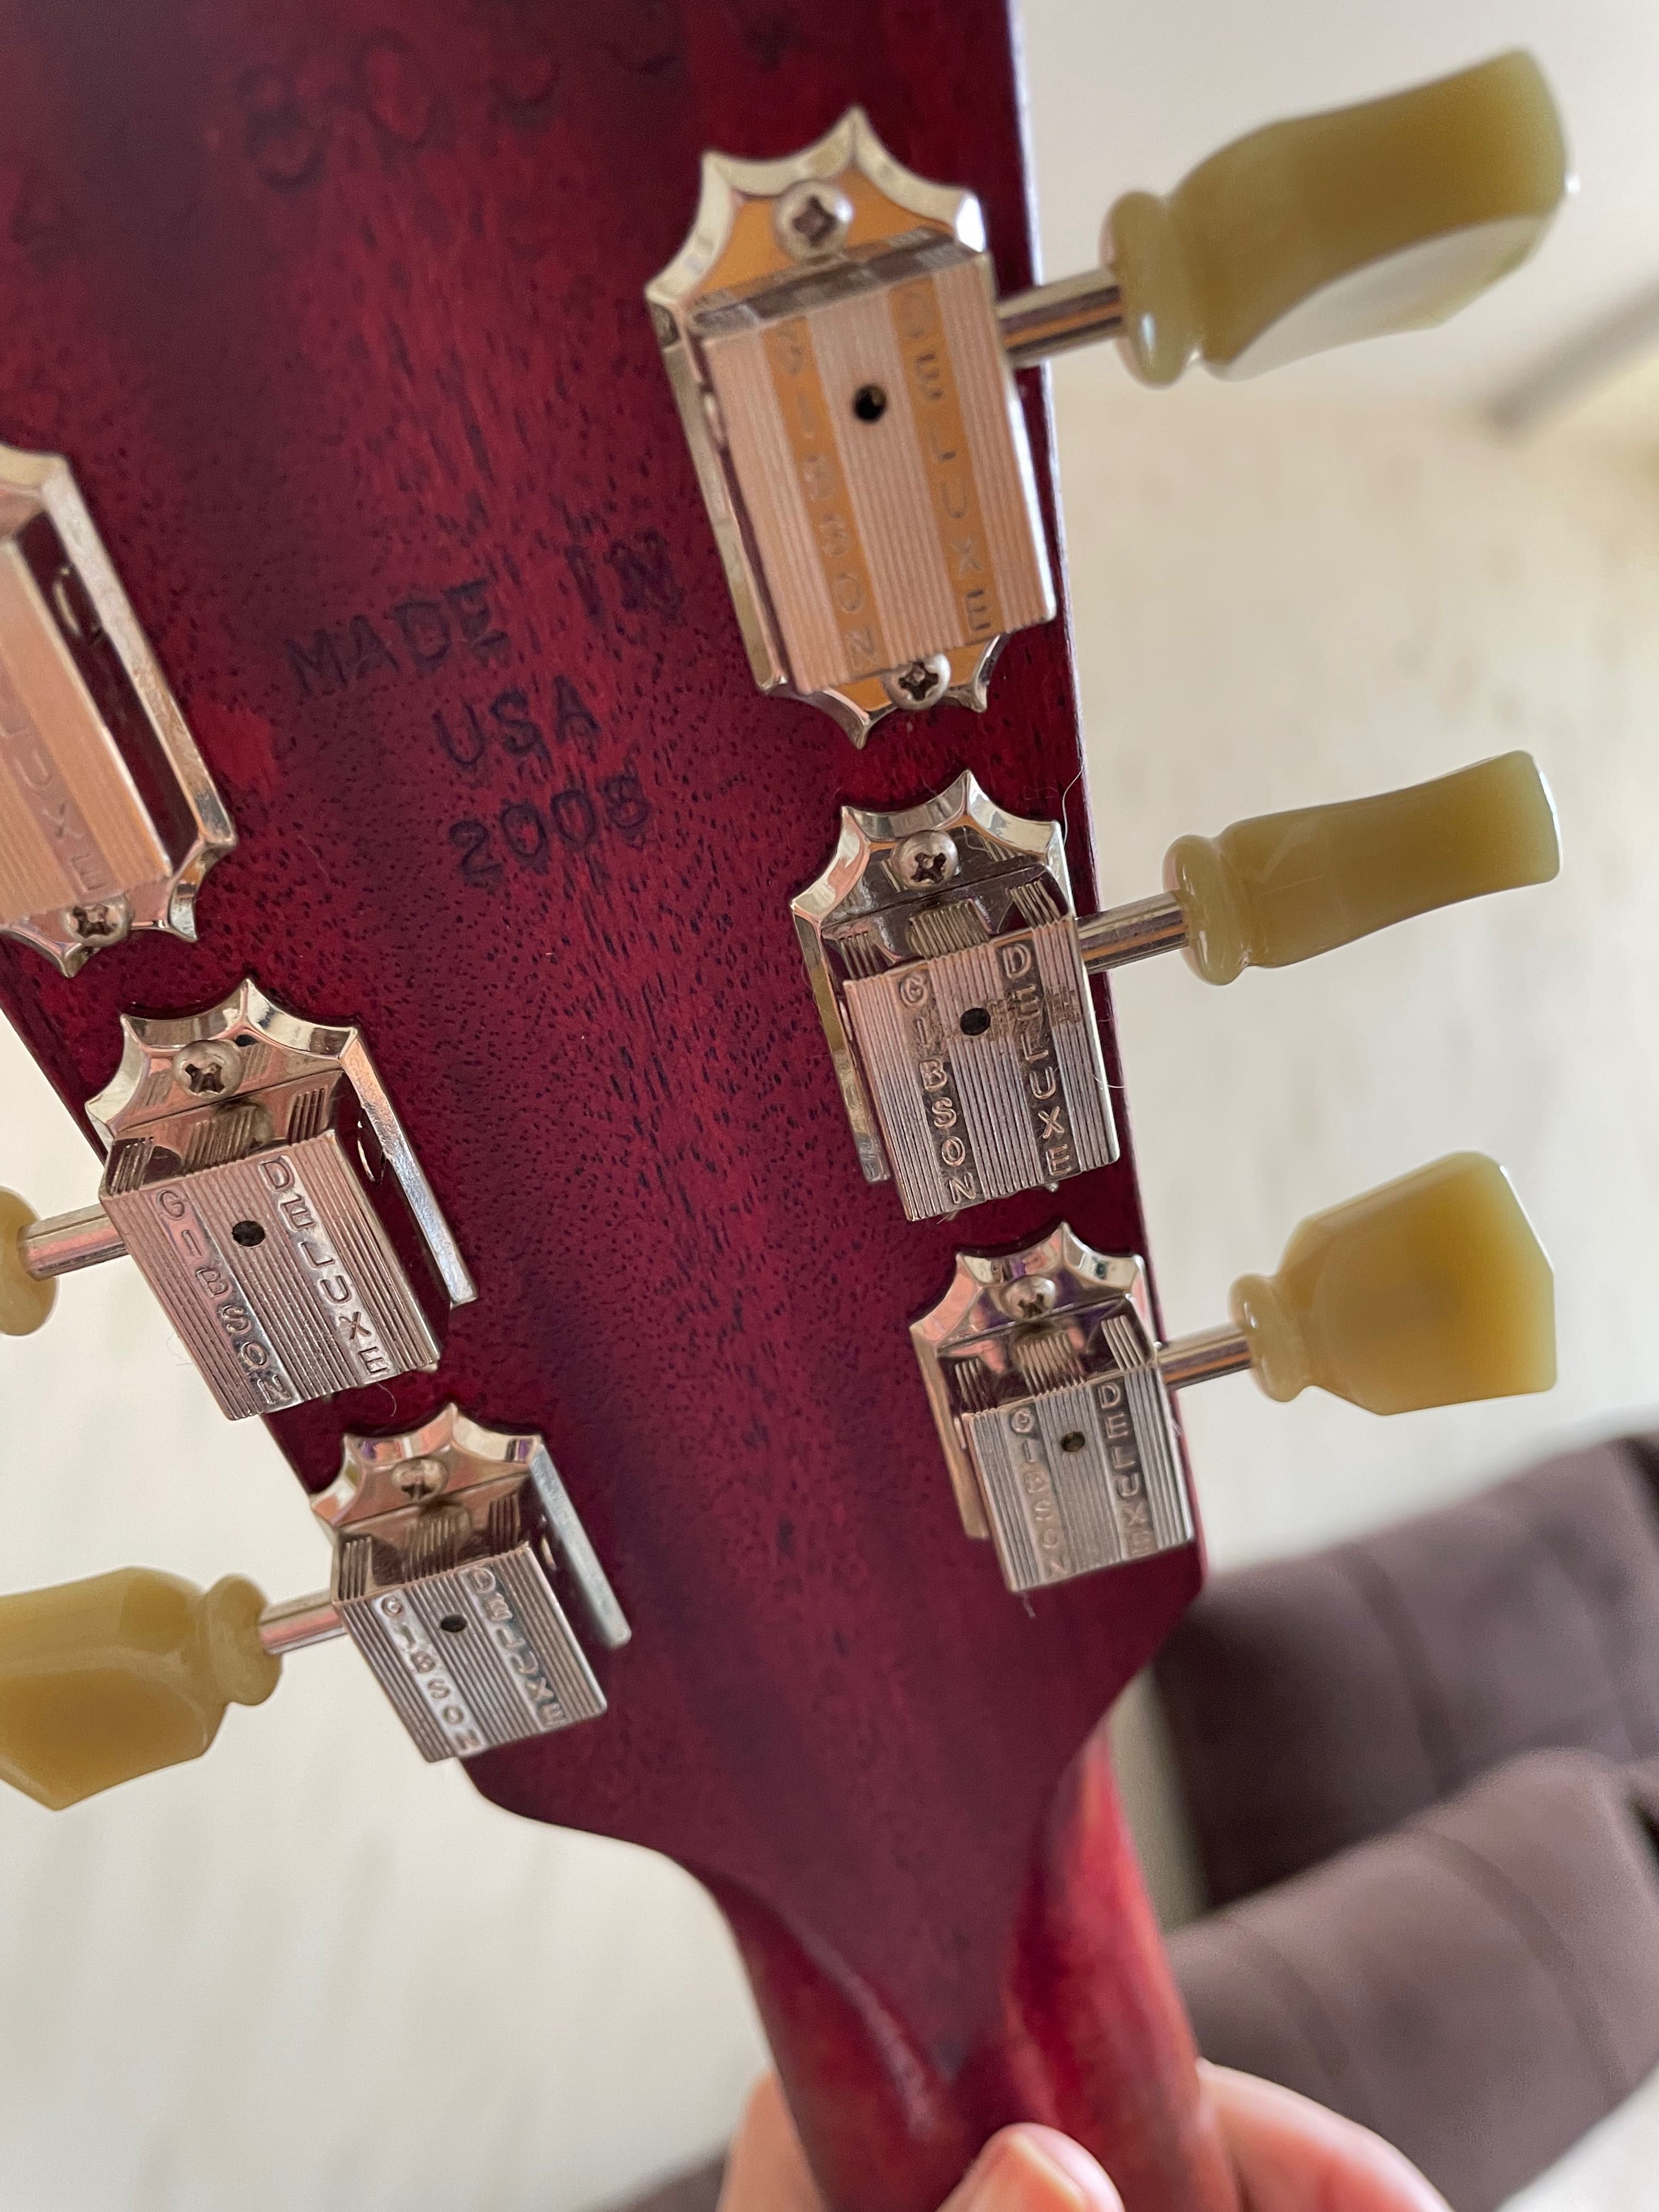 Китара Gibson Les Paul Studio